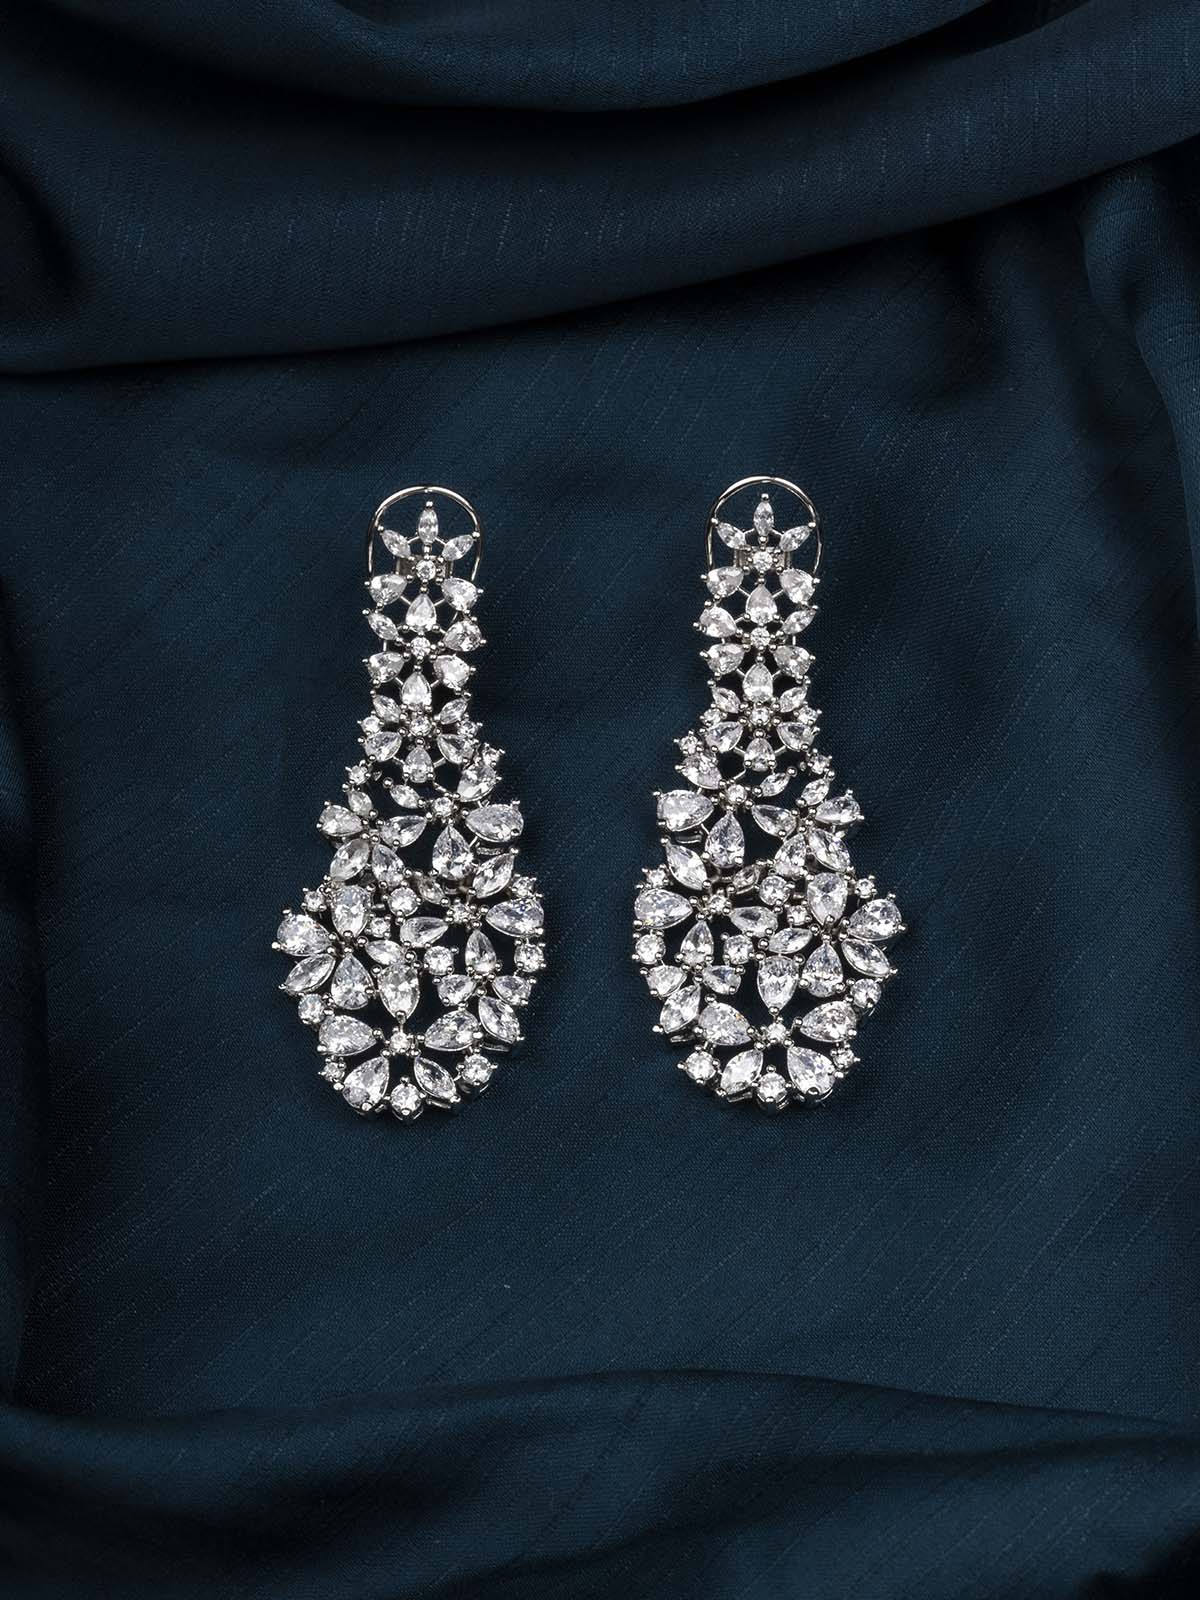 CZEAR533 - Silver Plated Faux Diamond Earrings